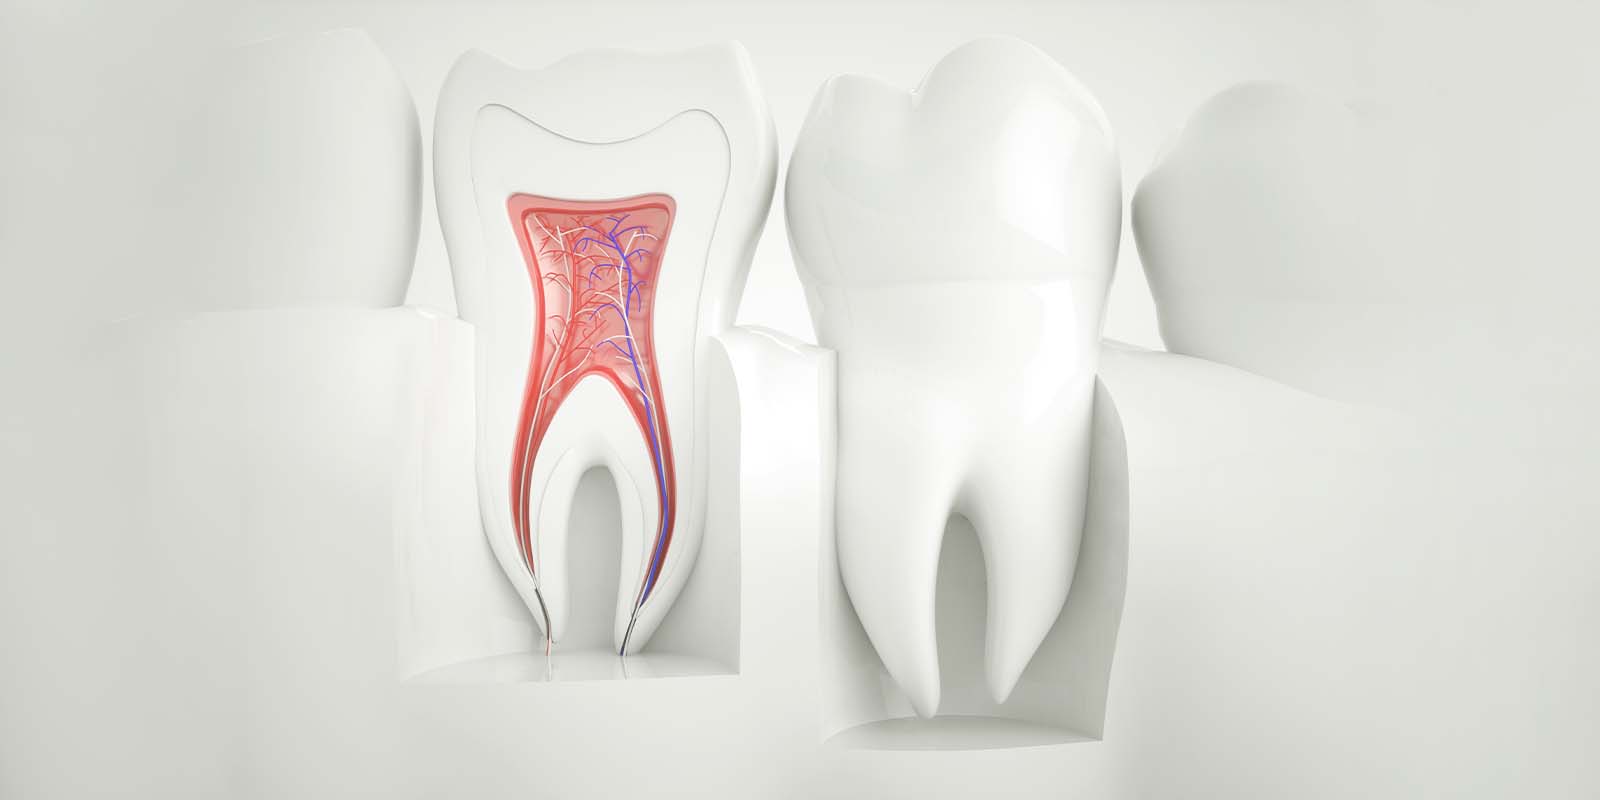 歯の構造について